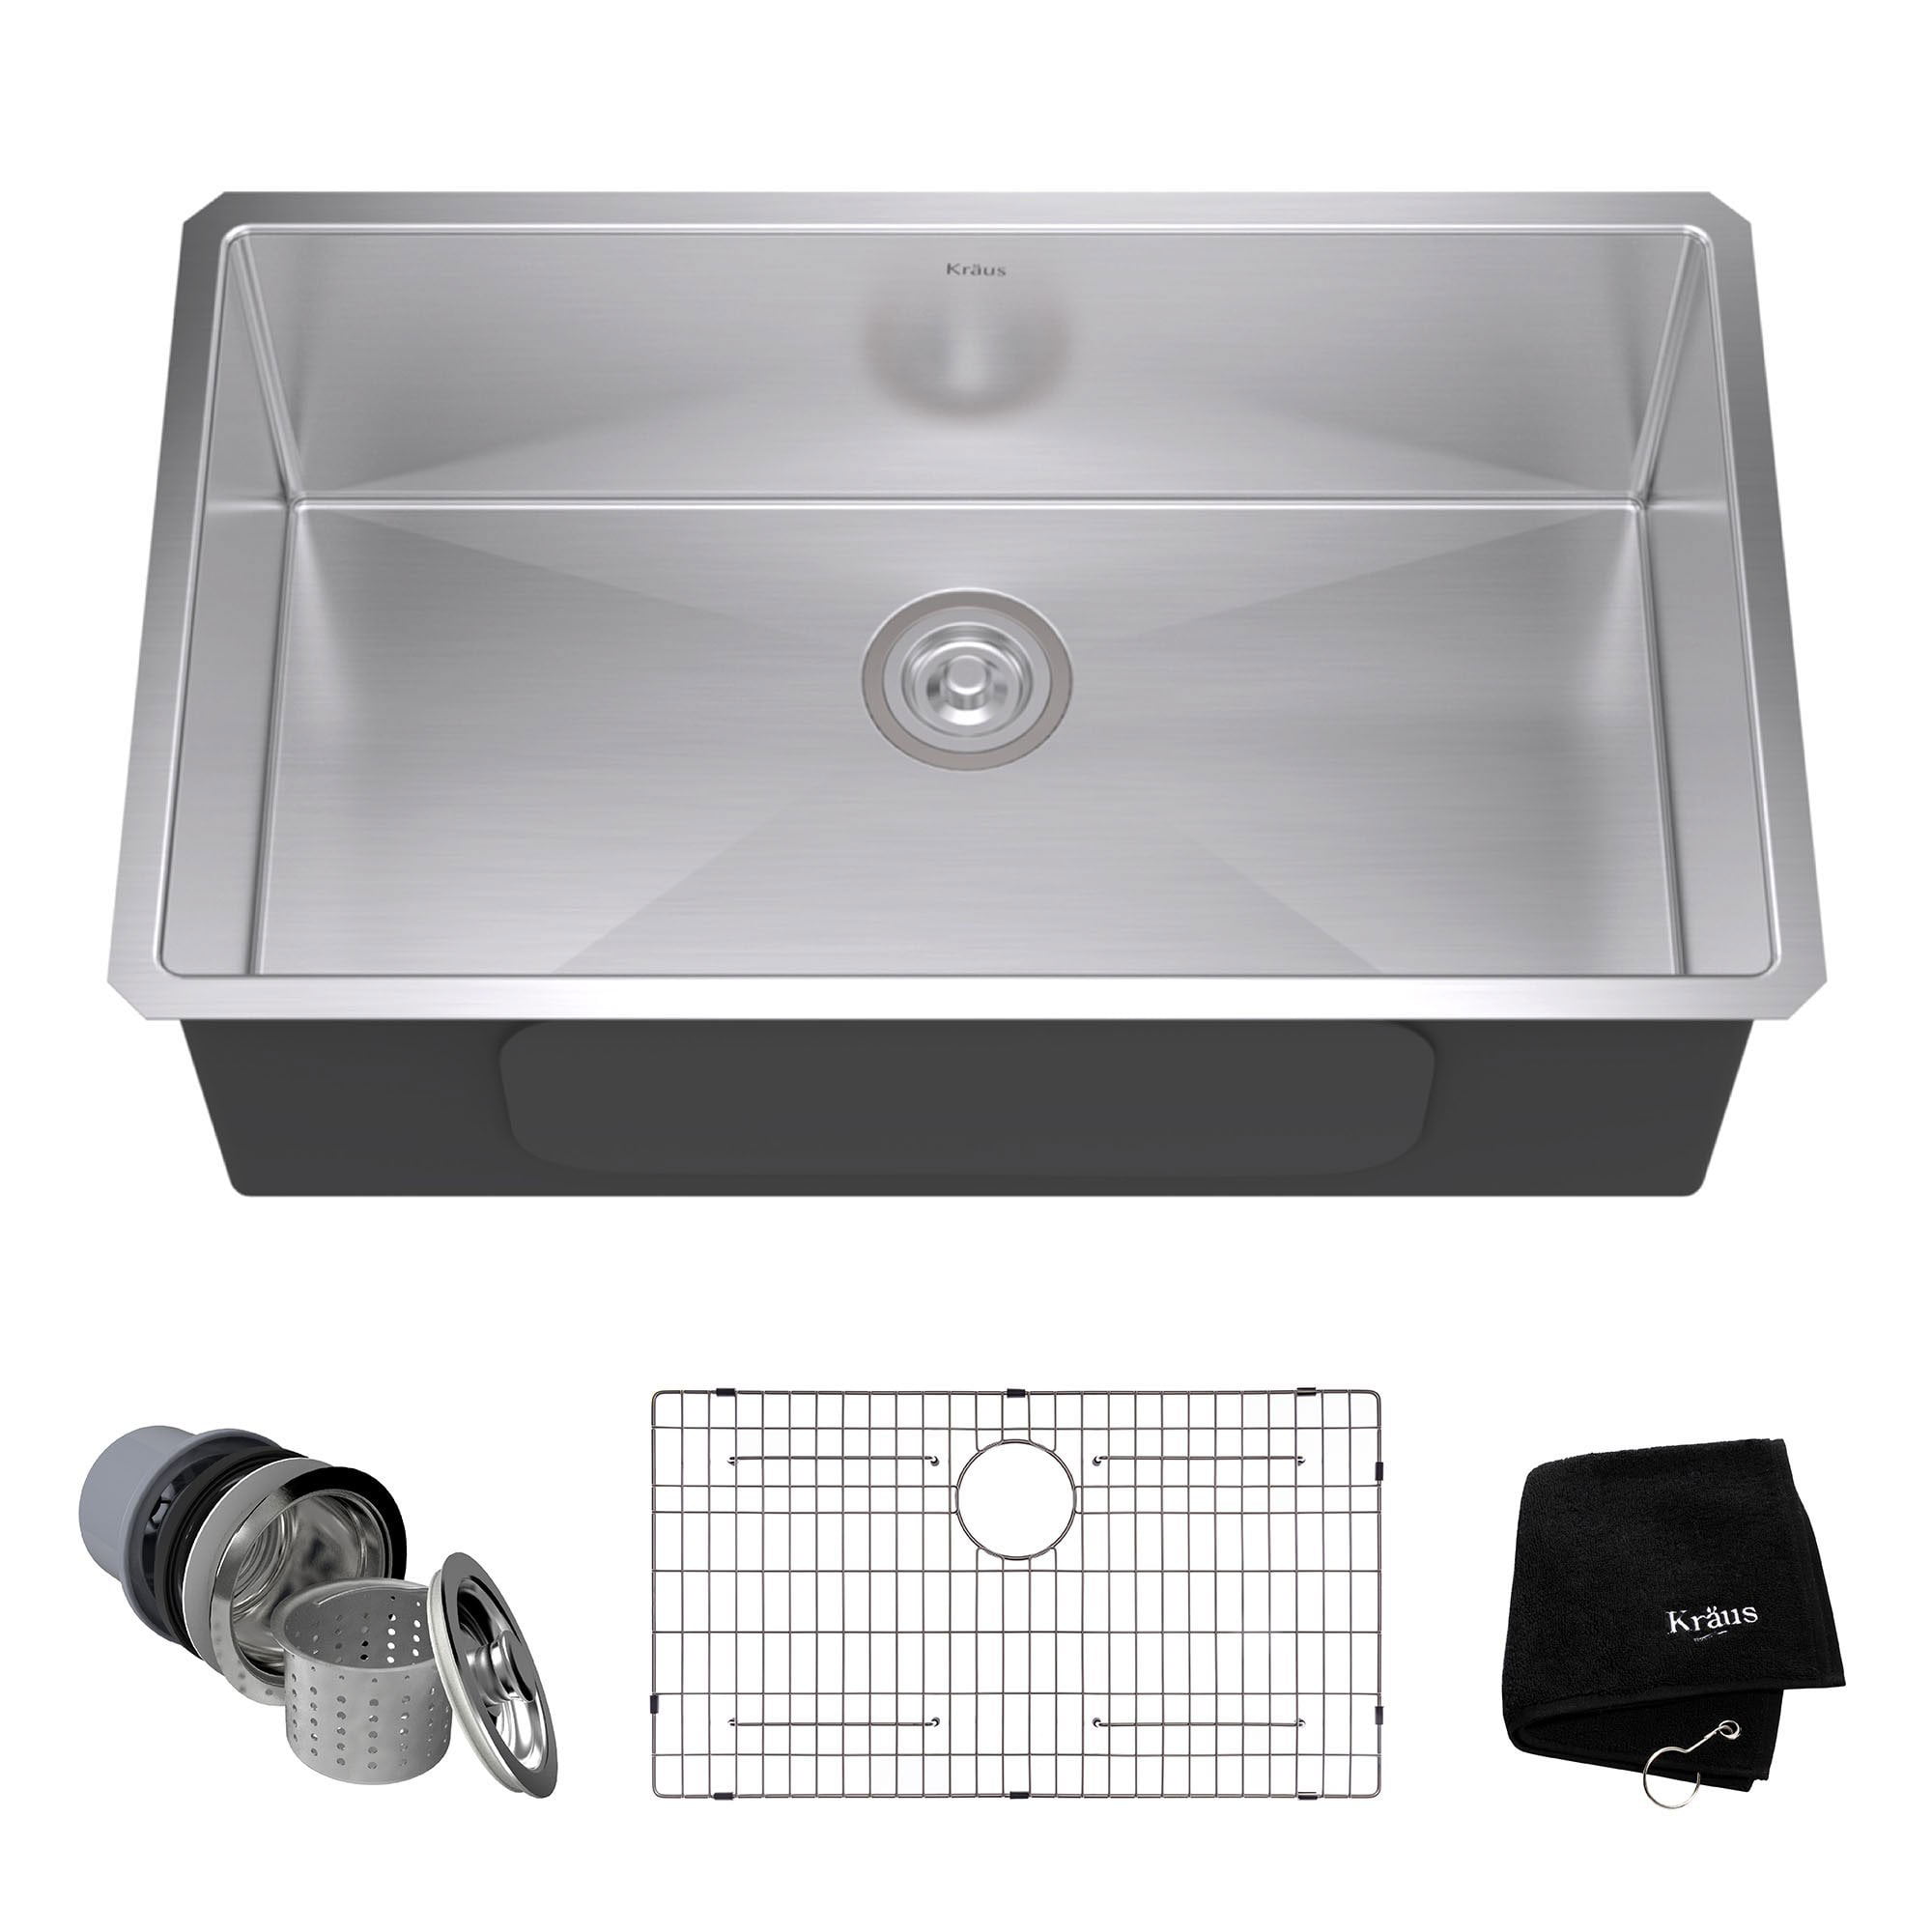 Kraus 32 Inch Rectangular Undermount Single Bowl Stainless Steel Kitchen Sink